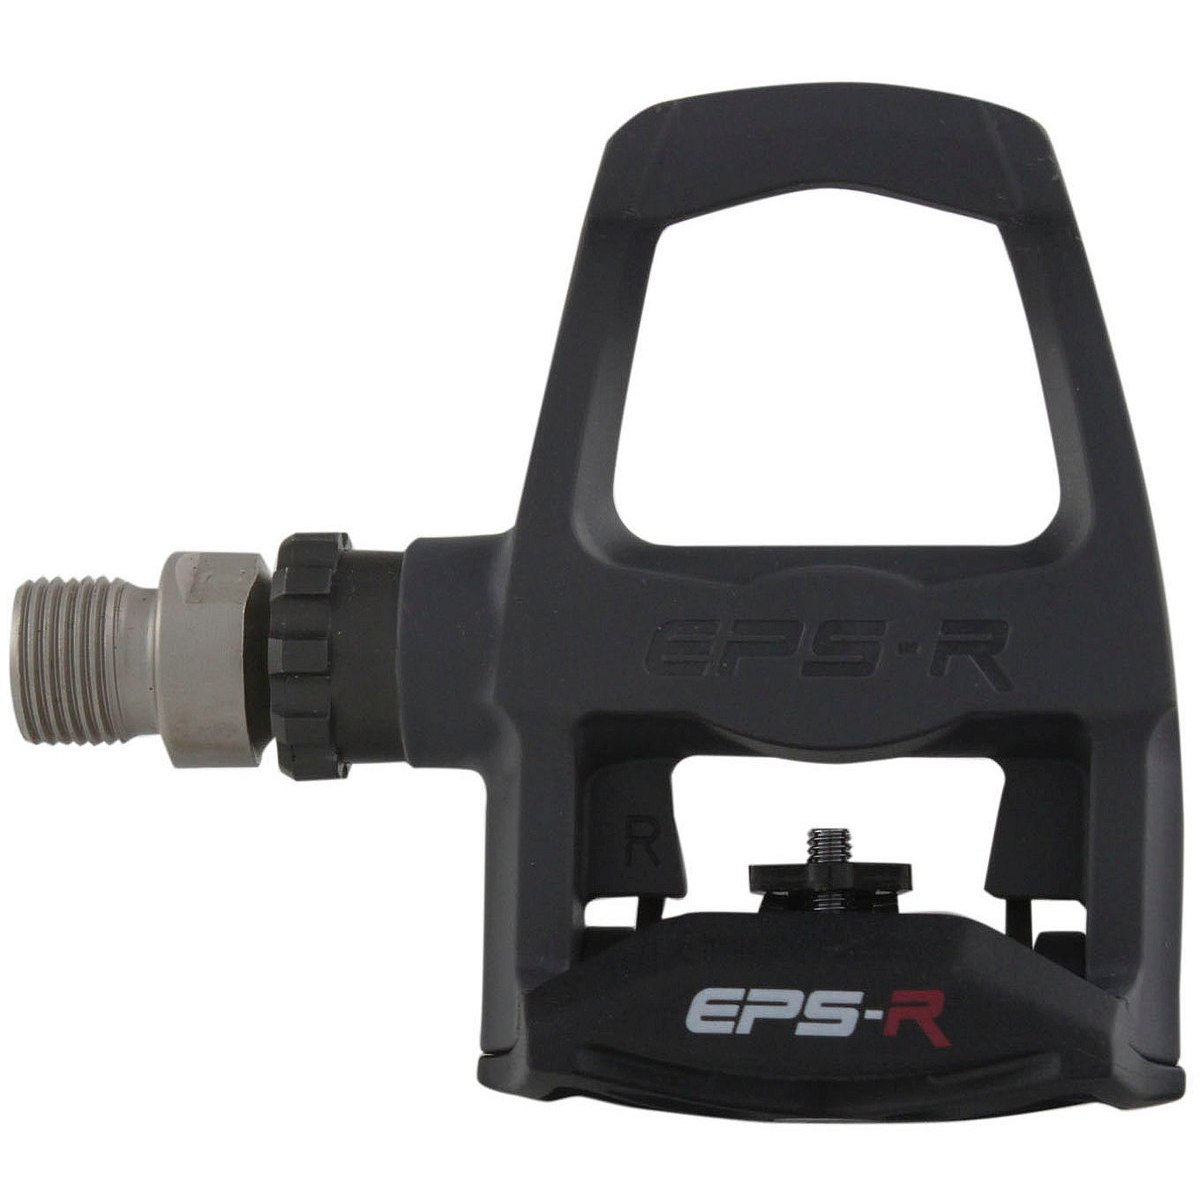 Productfoto van Exustar E-PR100PP Pedal